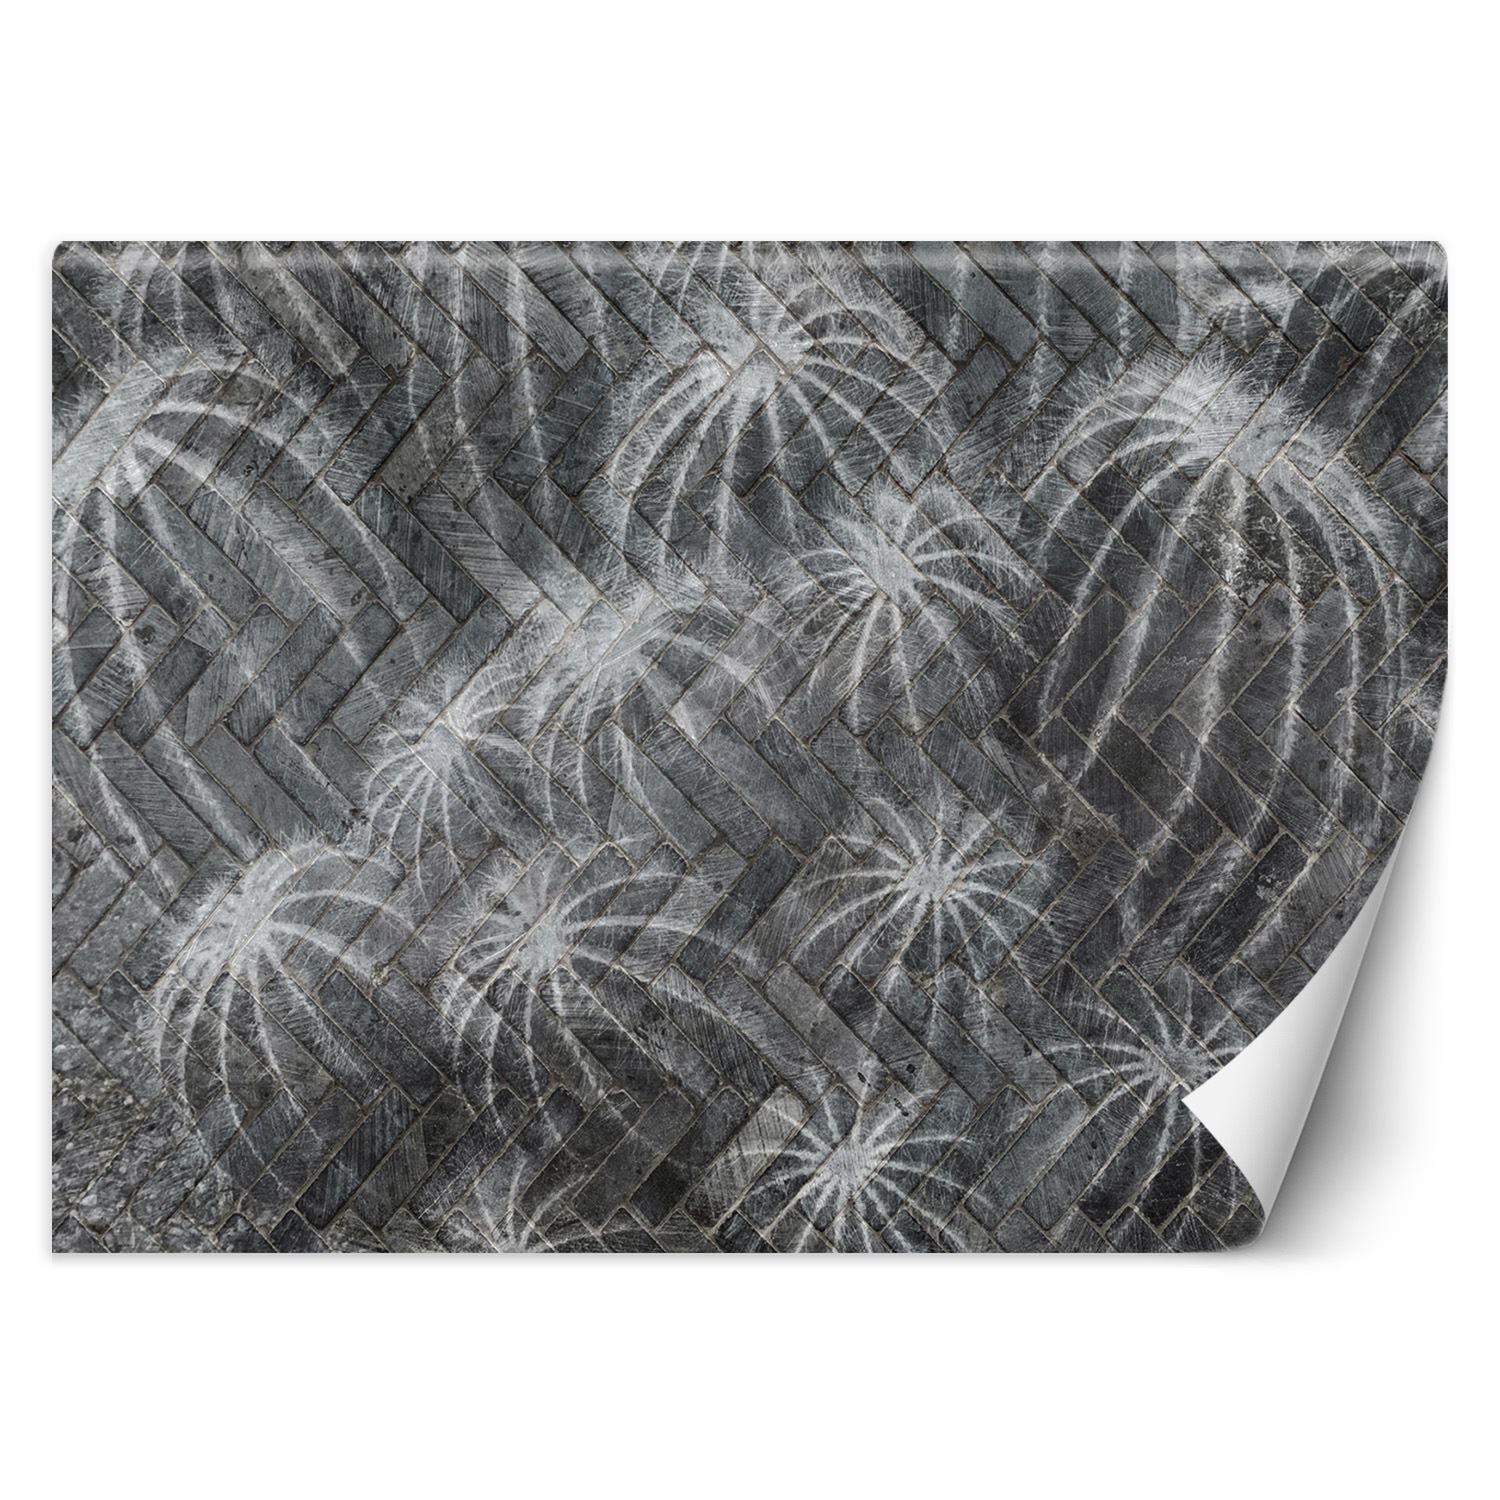 Trend24 – Behang – Cactussen In Grijs – Vliesbehang – Behang Woonkamer – Fotobehang – 350x245x2 cm – Incl. behanglijm